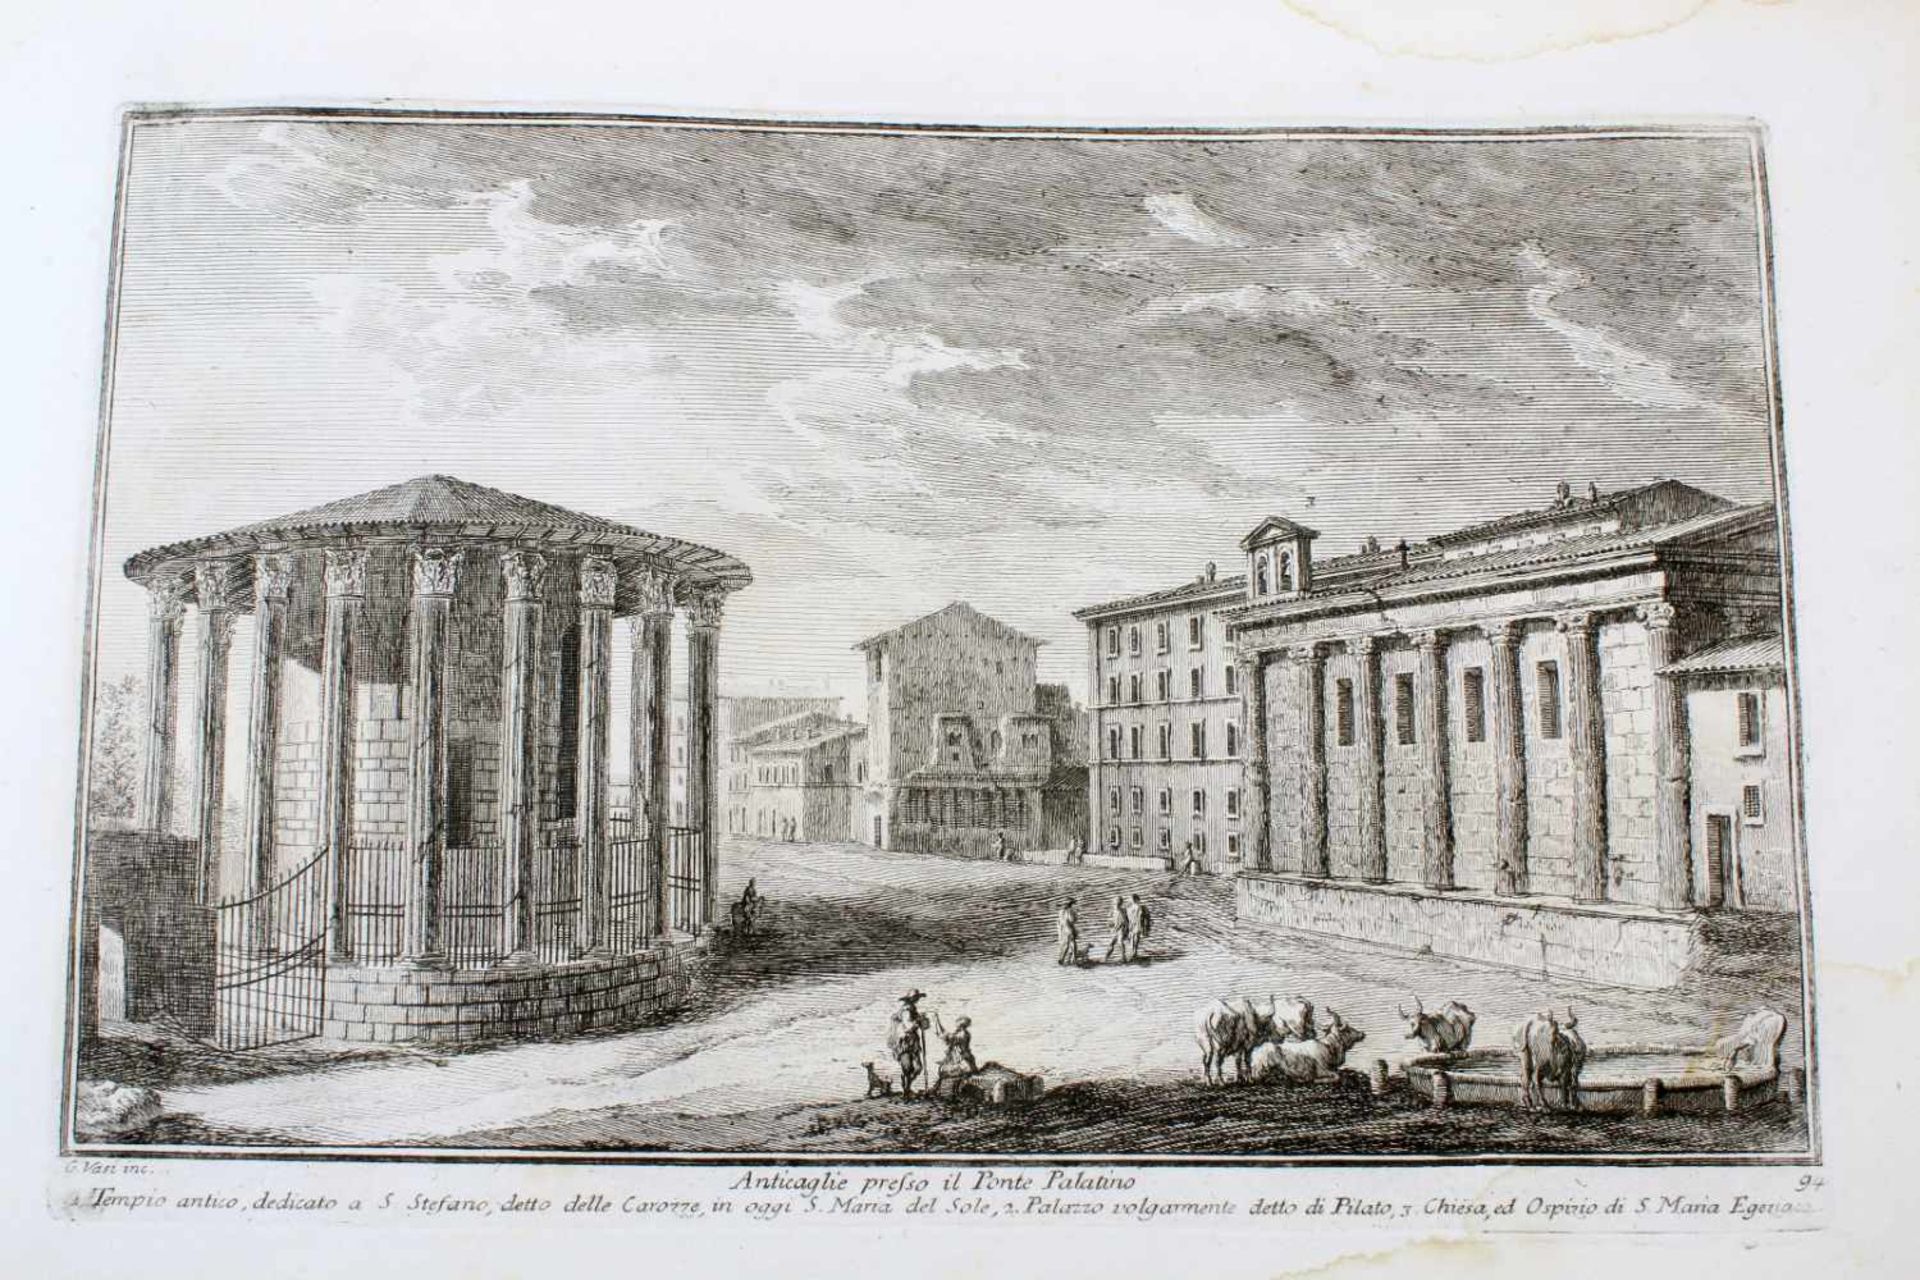 Roma - 64 Originalradierungen Ansichten von Rom - Giuseppe Vasi (1710 - 1782)Die Radierungen sind - Bild 49 aus 69